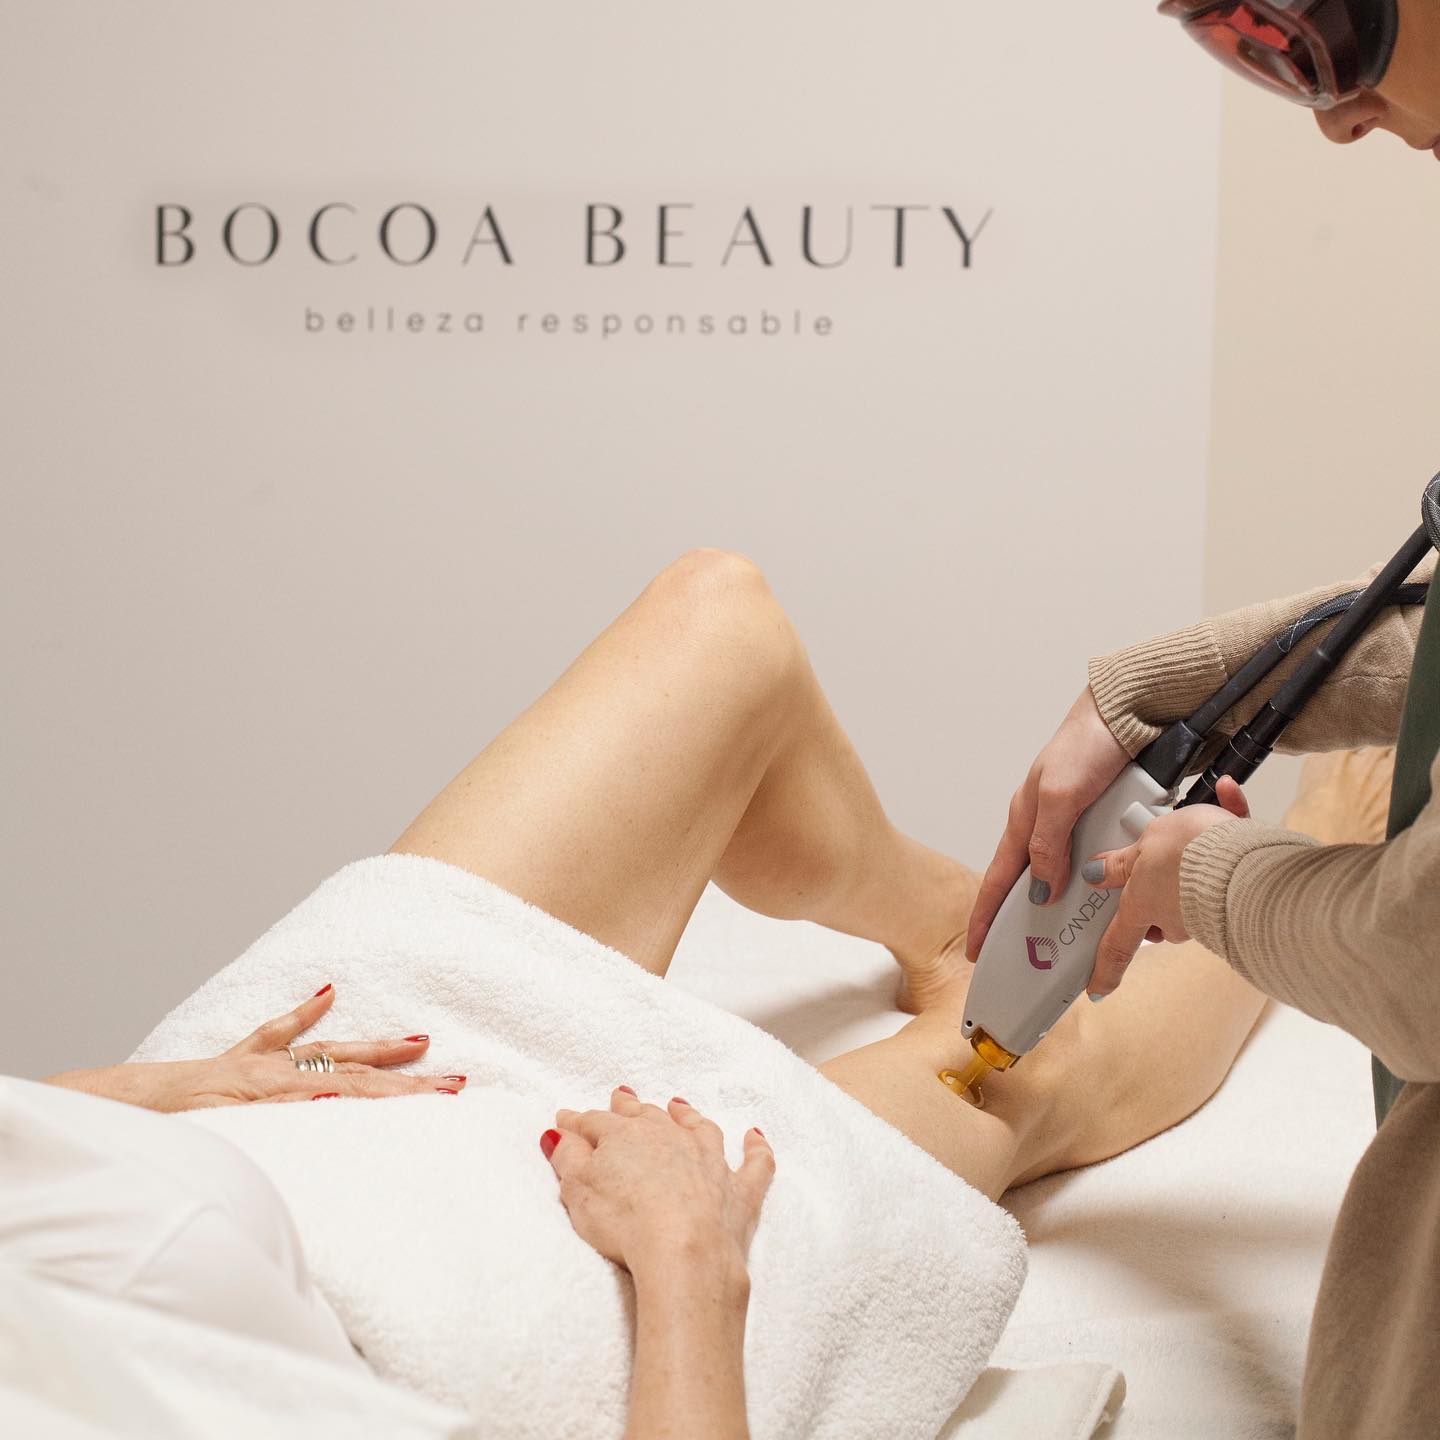 Bocoa Beauty, el centro de belleza natural y responsable que tienes que conocer en Madrid